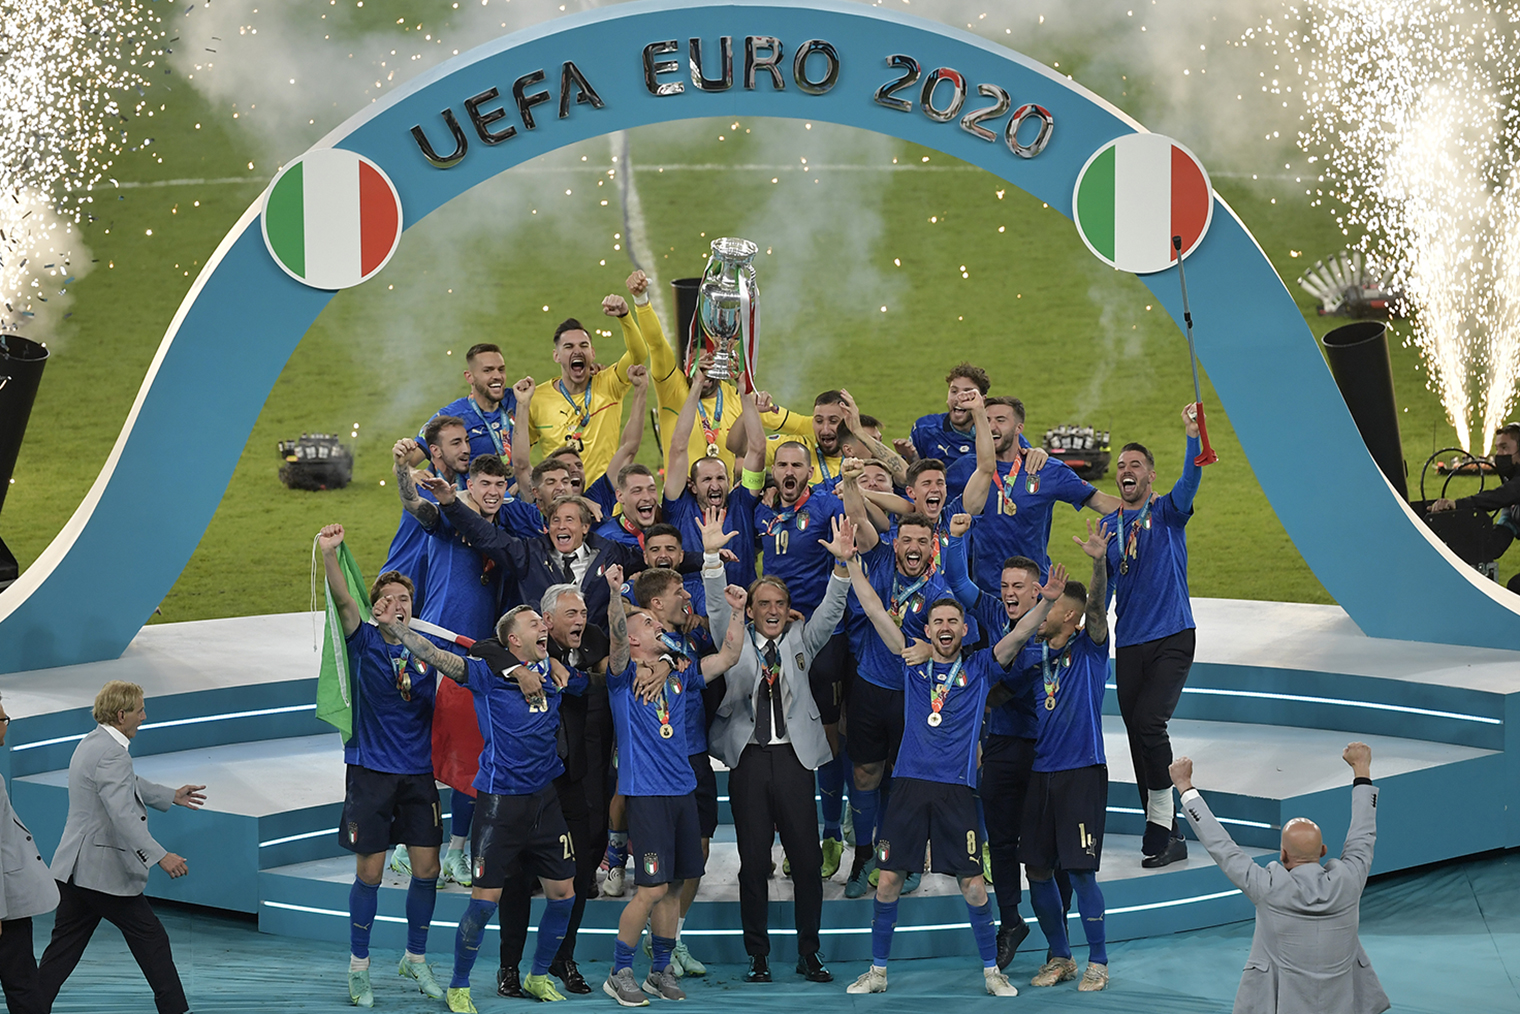 Сборная Италии после победы на Евро‑2020. Фотография: Andrea Staccioli / Insidefoto / LightRocket via Getty Images